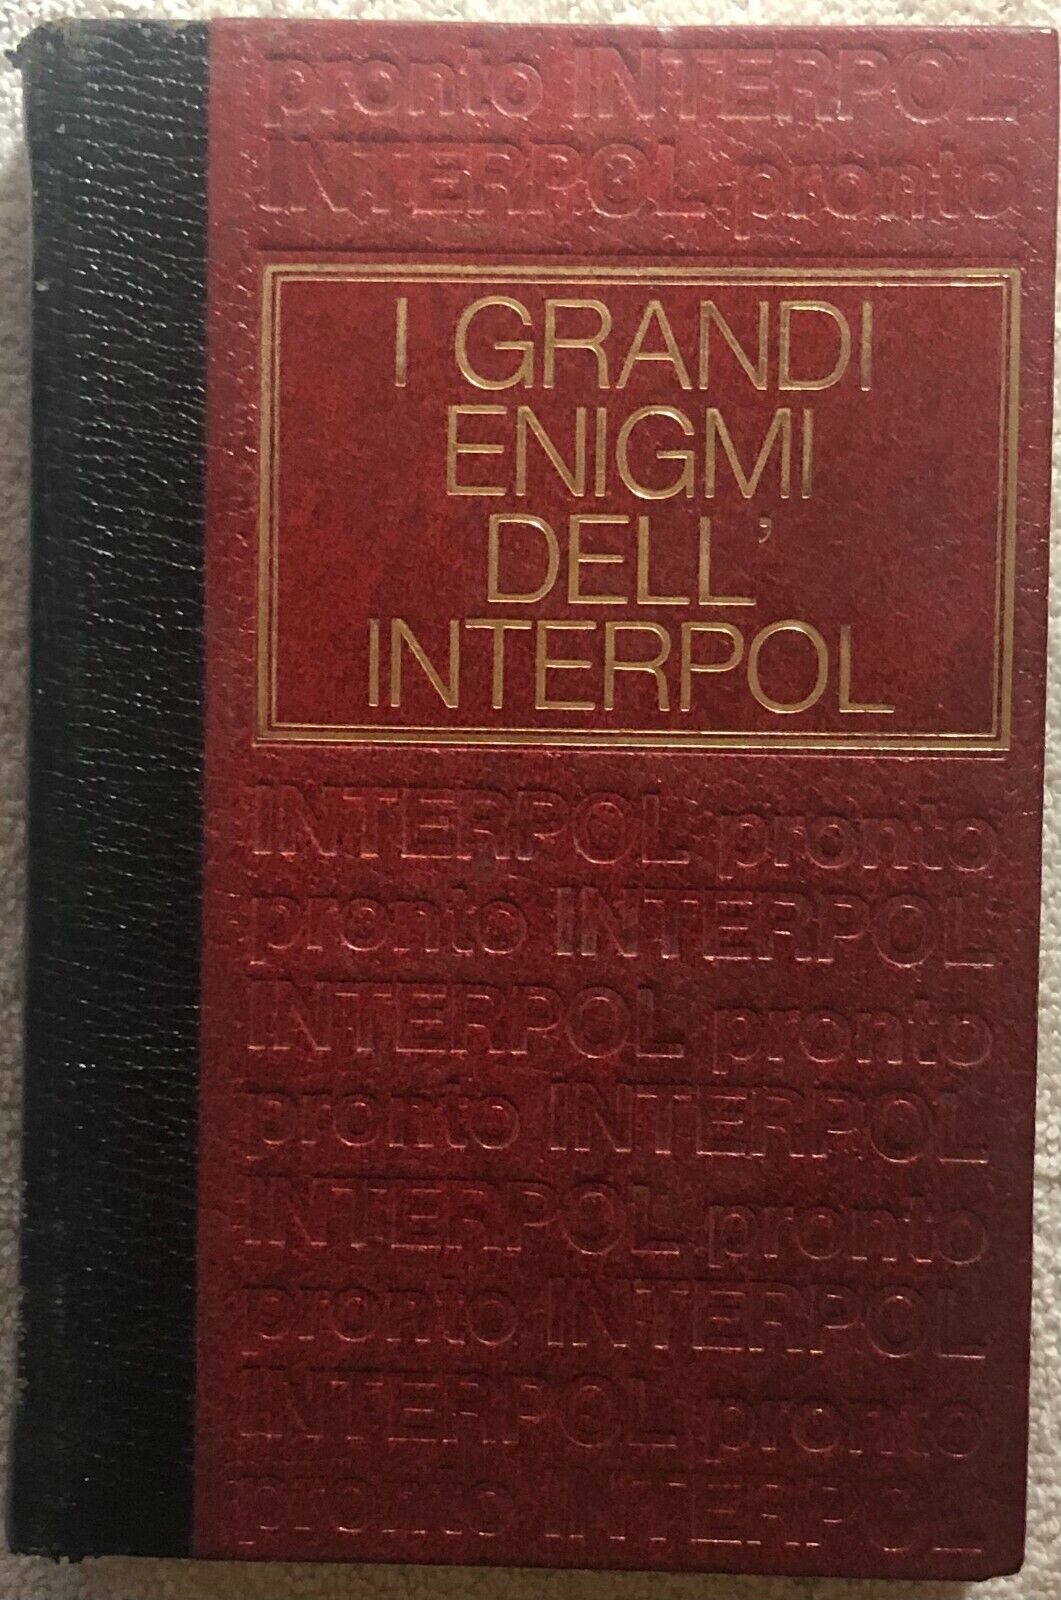 I grandi enigmi delL'Interpol dossier n. 2 di Aa.vv.,  1970,  Edizioni Cremille